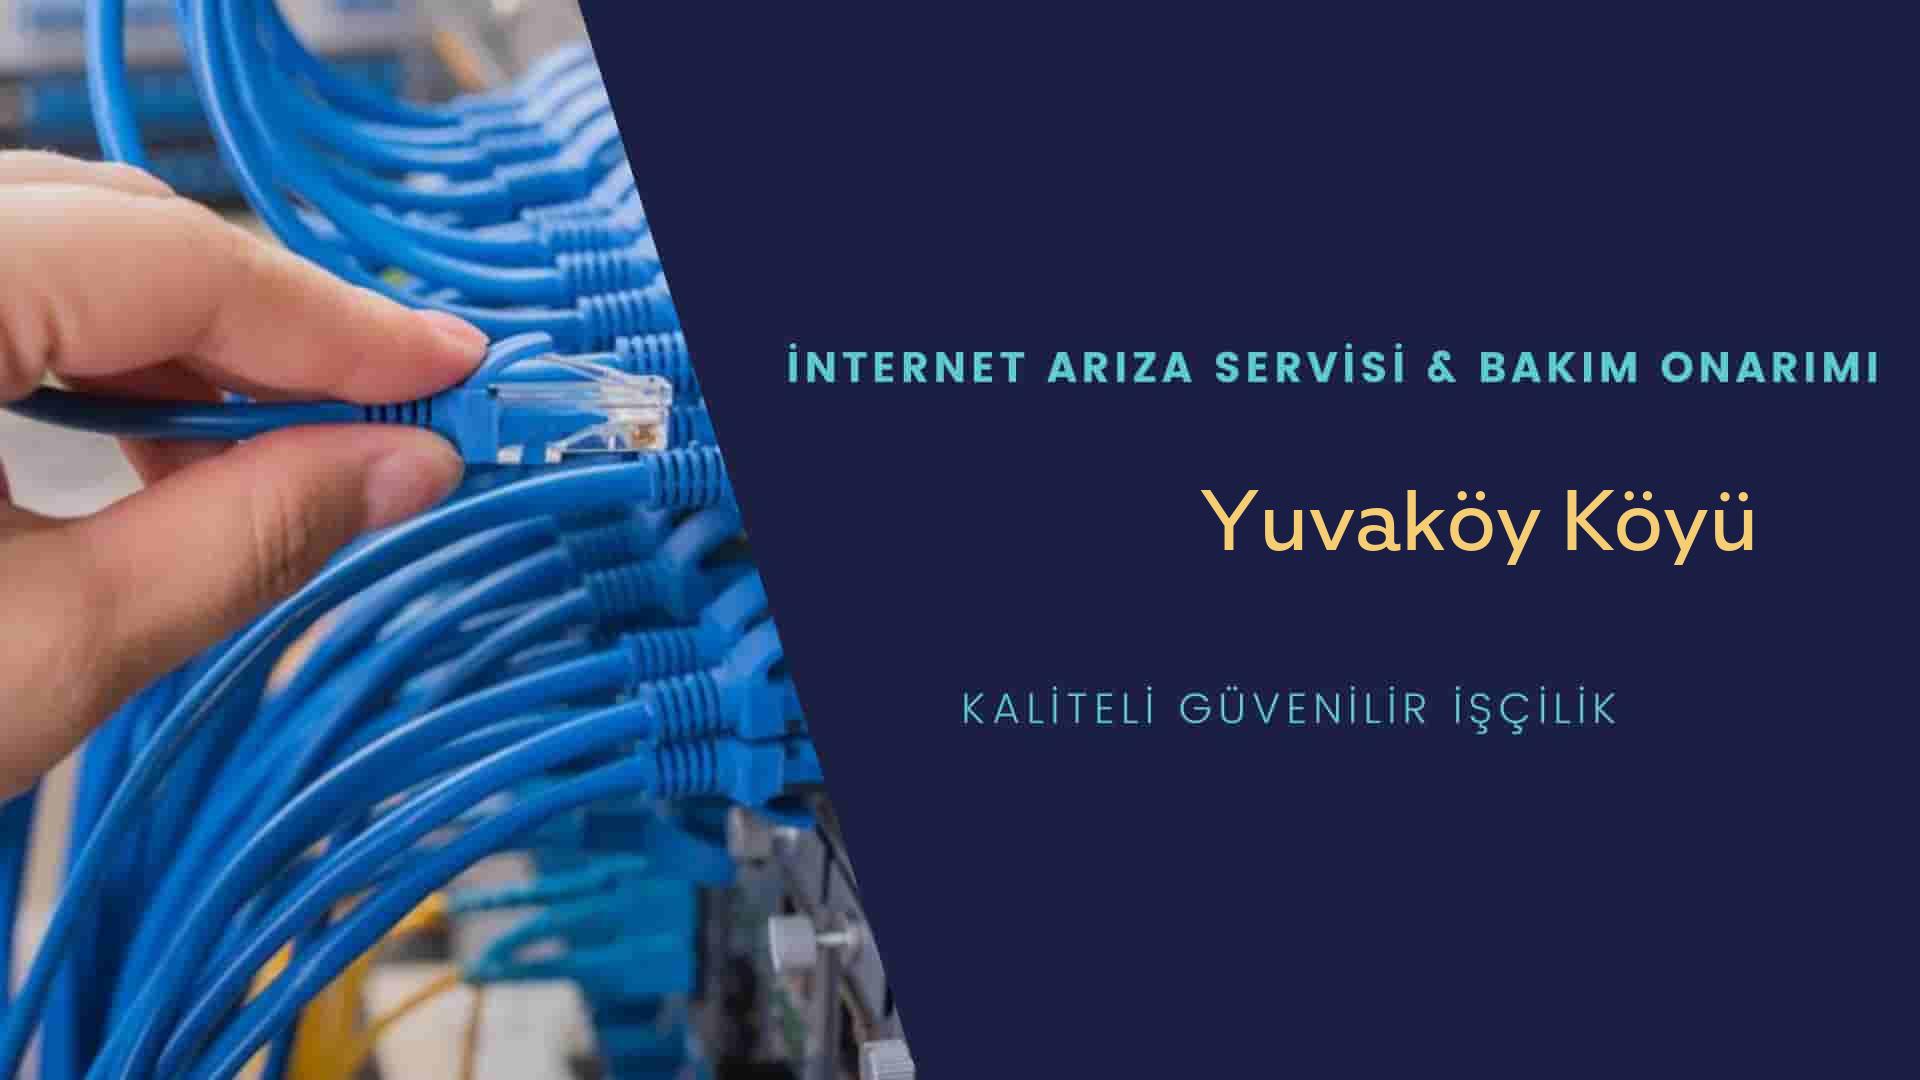 Yuvaköy Köyü internet kablosu çekimi yapan yerler veya elektrikçiler mi? arıyorsunuz doğru yerdesiniz o zaman sizlere 7/24 yardımcı olacak profesyonel ustalarımız bir telefon kadar yakındır size.